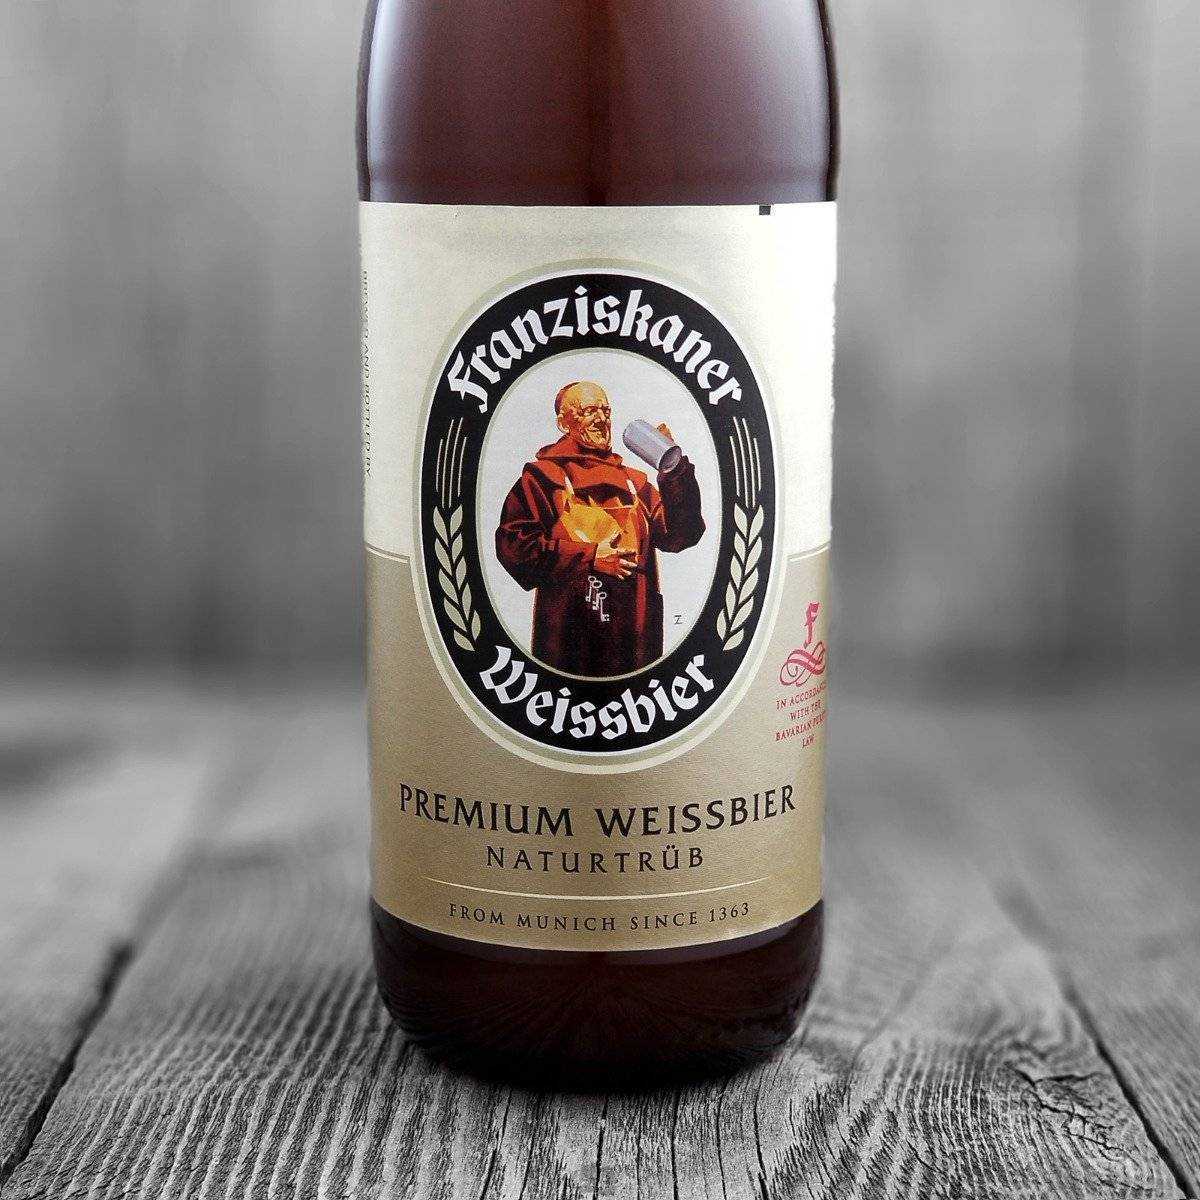 Пиво franziskaner ("францисканер"): история, обзор, вкусовые характеристики